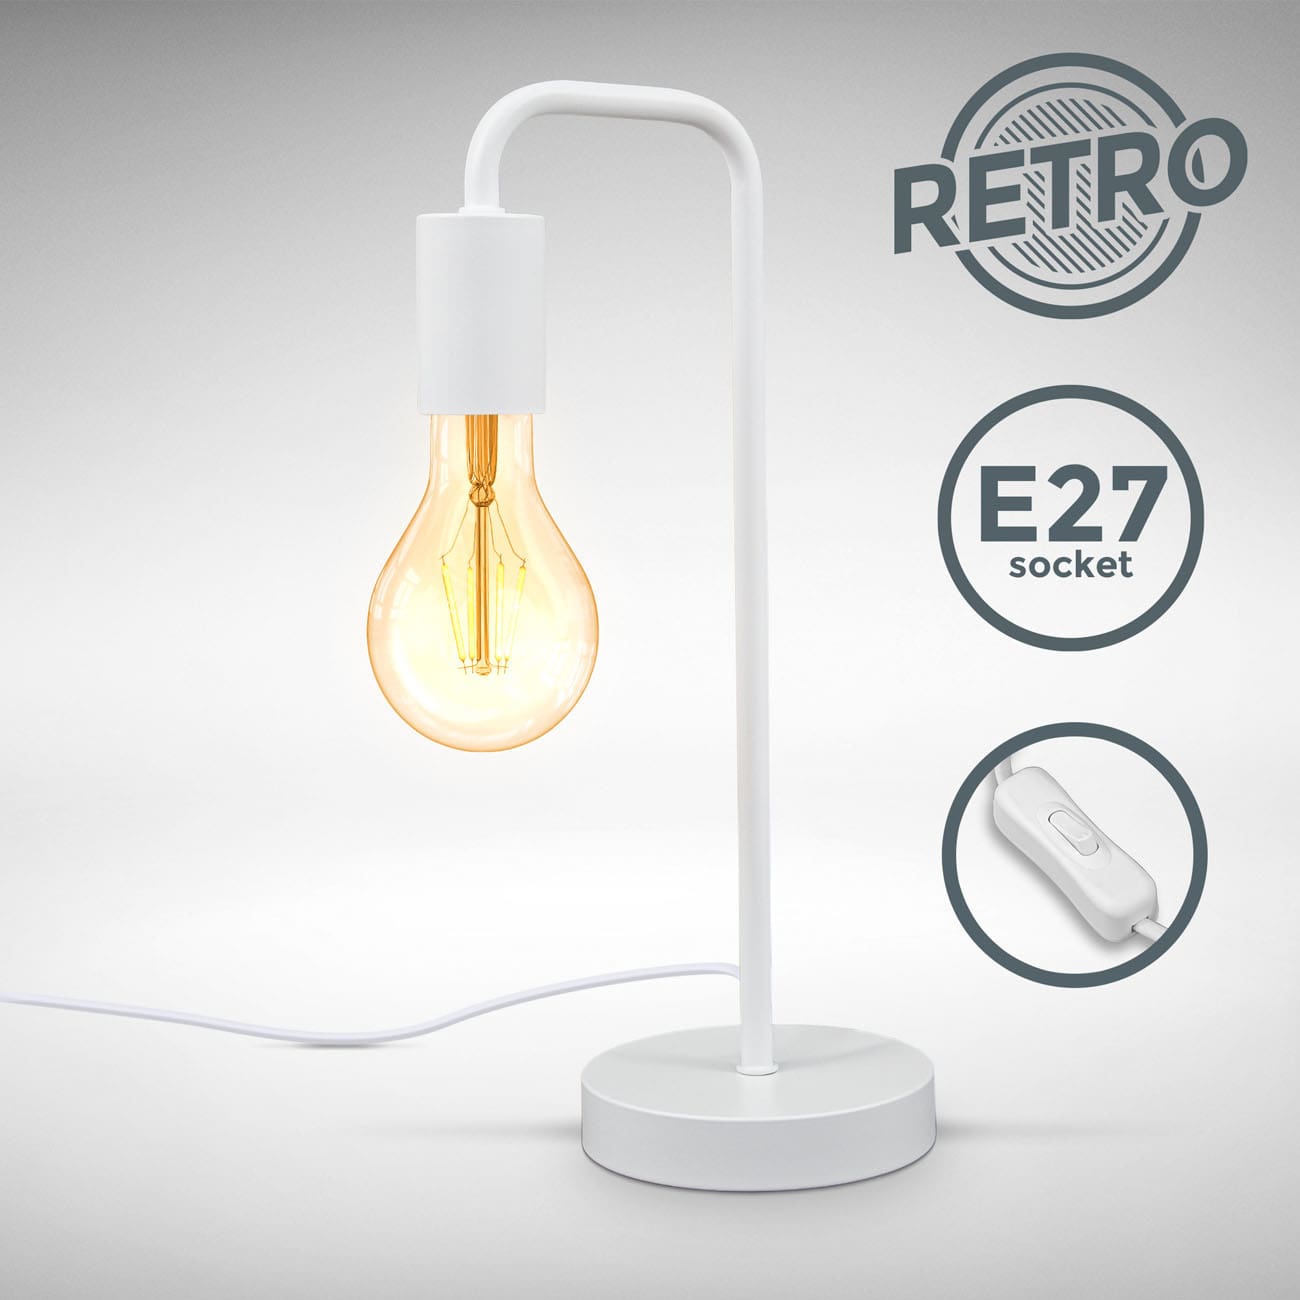 Retro Tischlampe 38x13cm - 1-flammig - Tischleuchte Metall mit Kabelschalter Fassung E27 max 10W Nachttisch | Weiß - 5